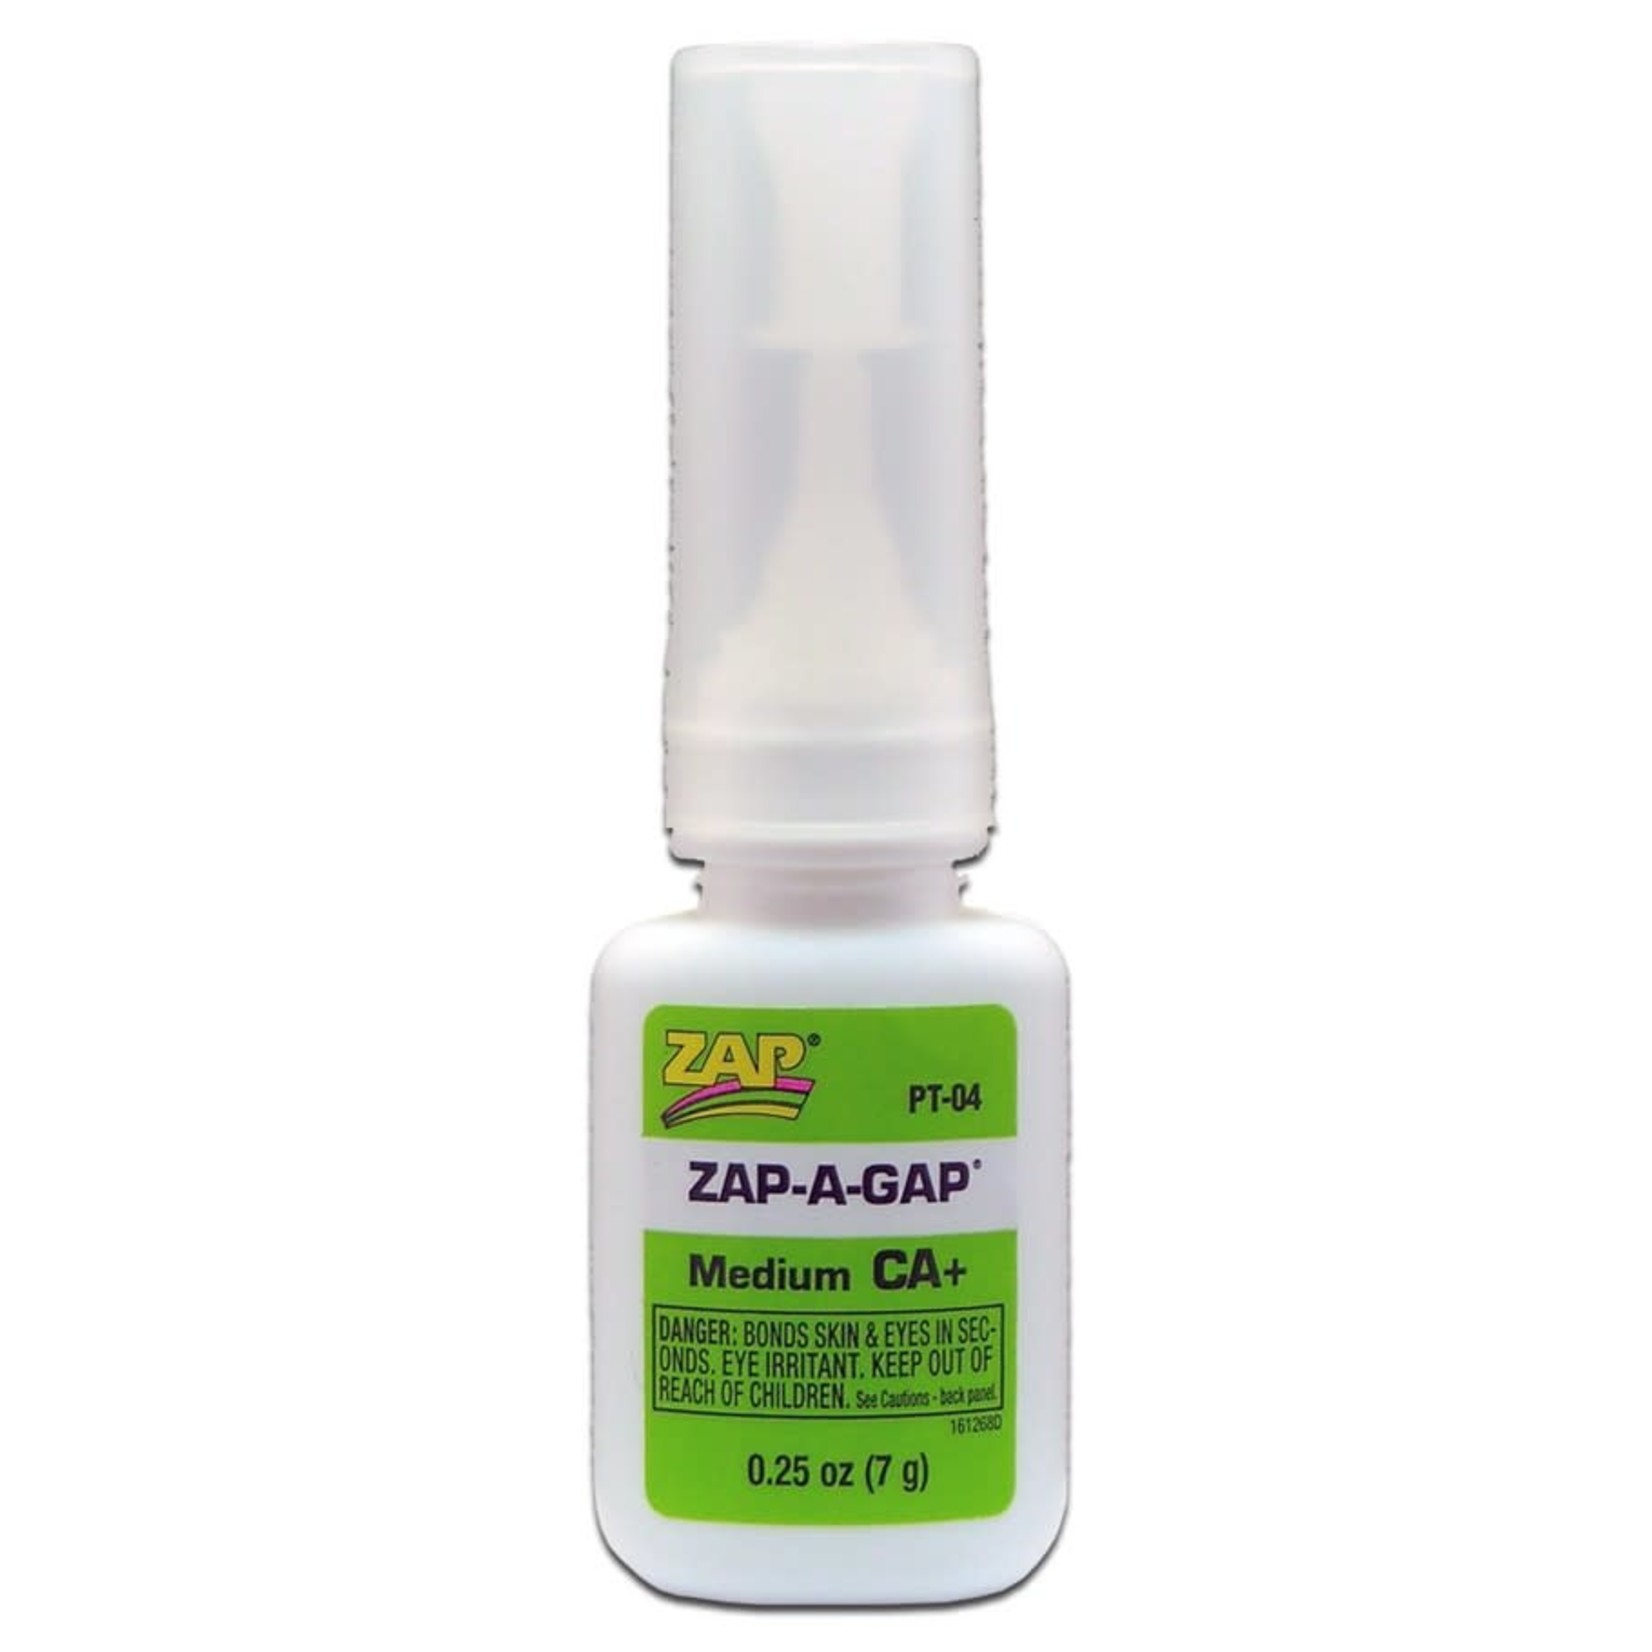 Zap Glue Zap-a-gap Medium CA Super Glue 1/4 oz